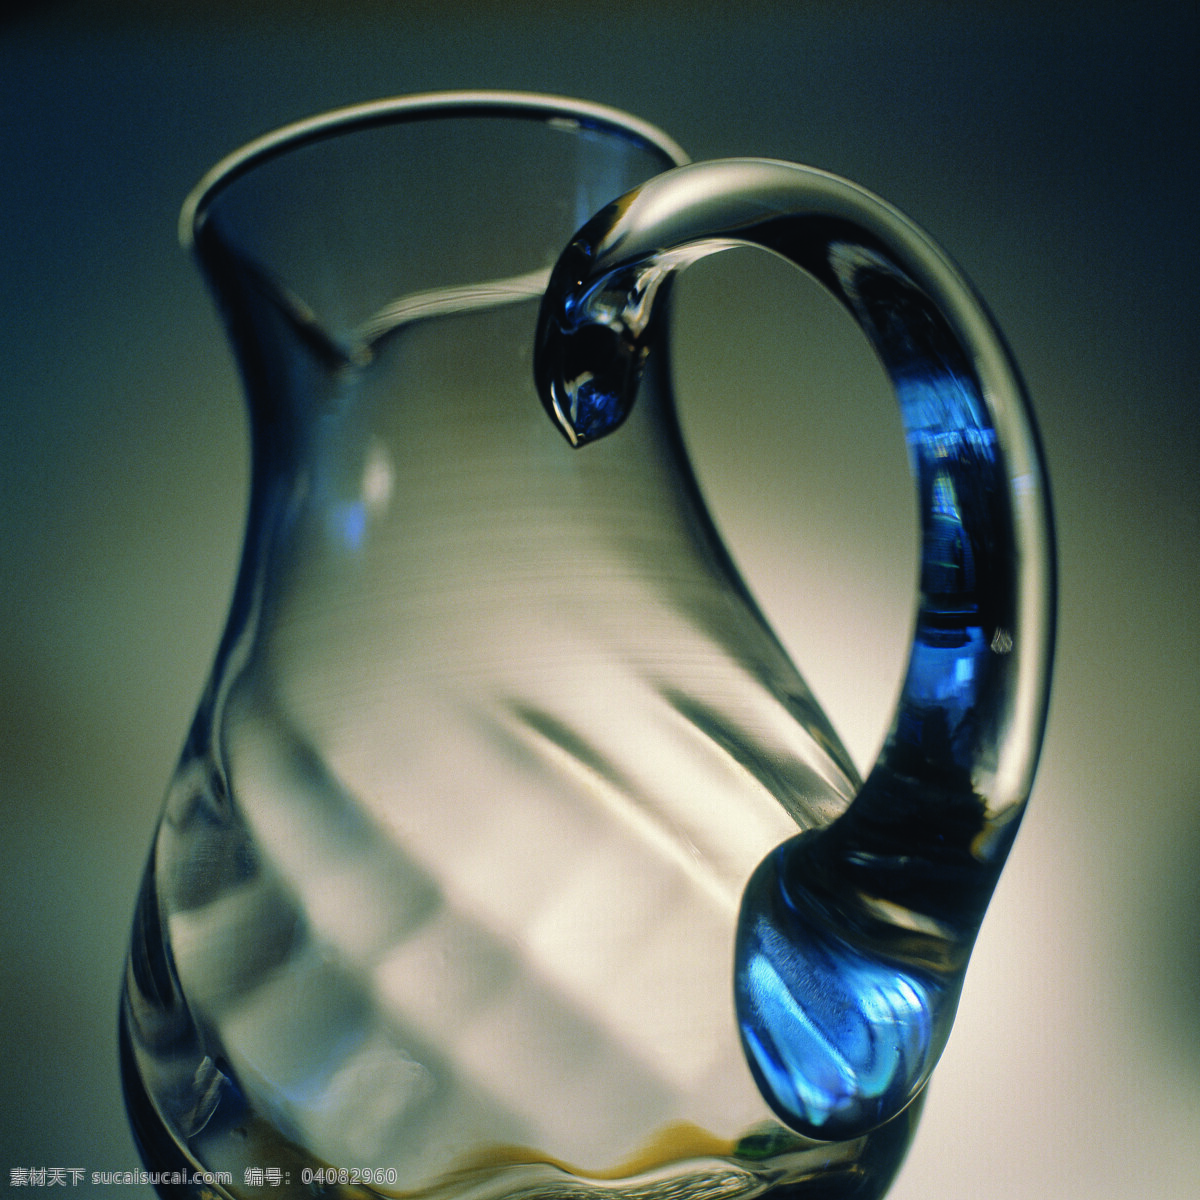 全球 首席 大百科 杯子 玻璃 玻璃杯 风格 瓶子 透明 质感 风景 生活 旅游餐饮